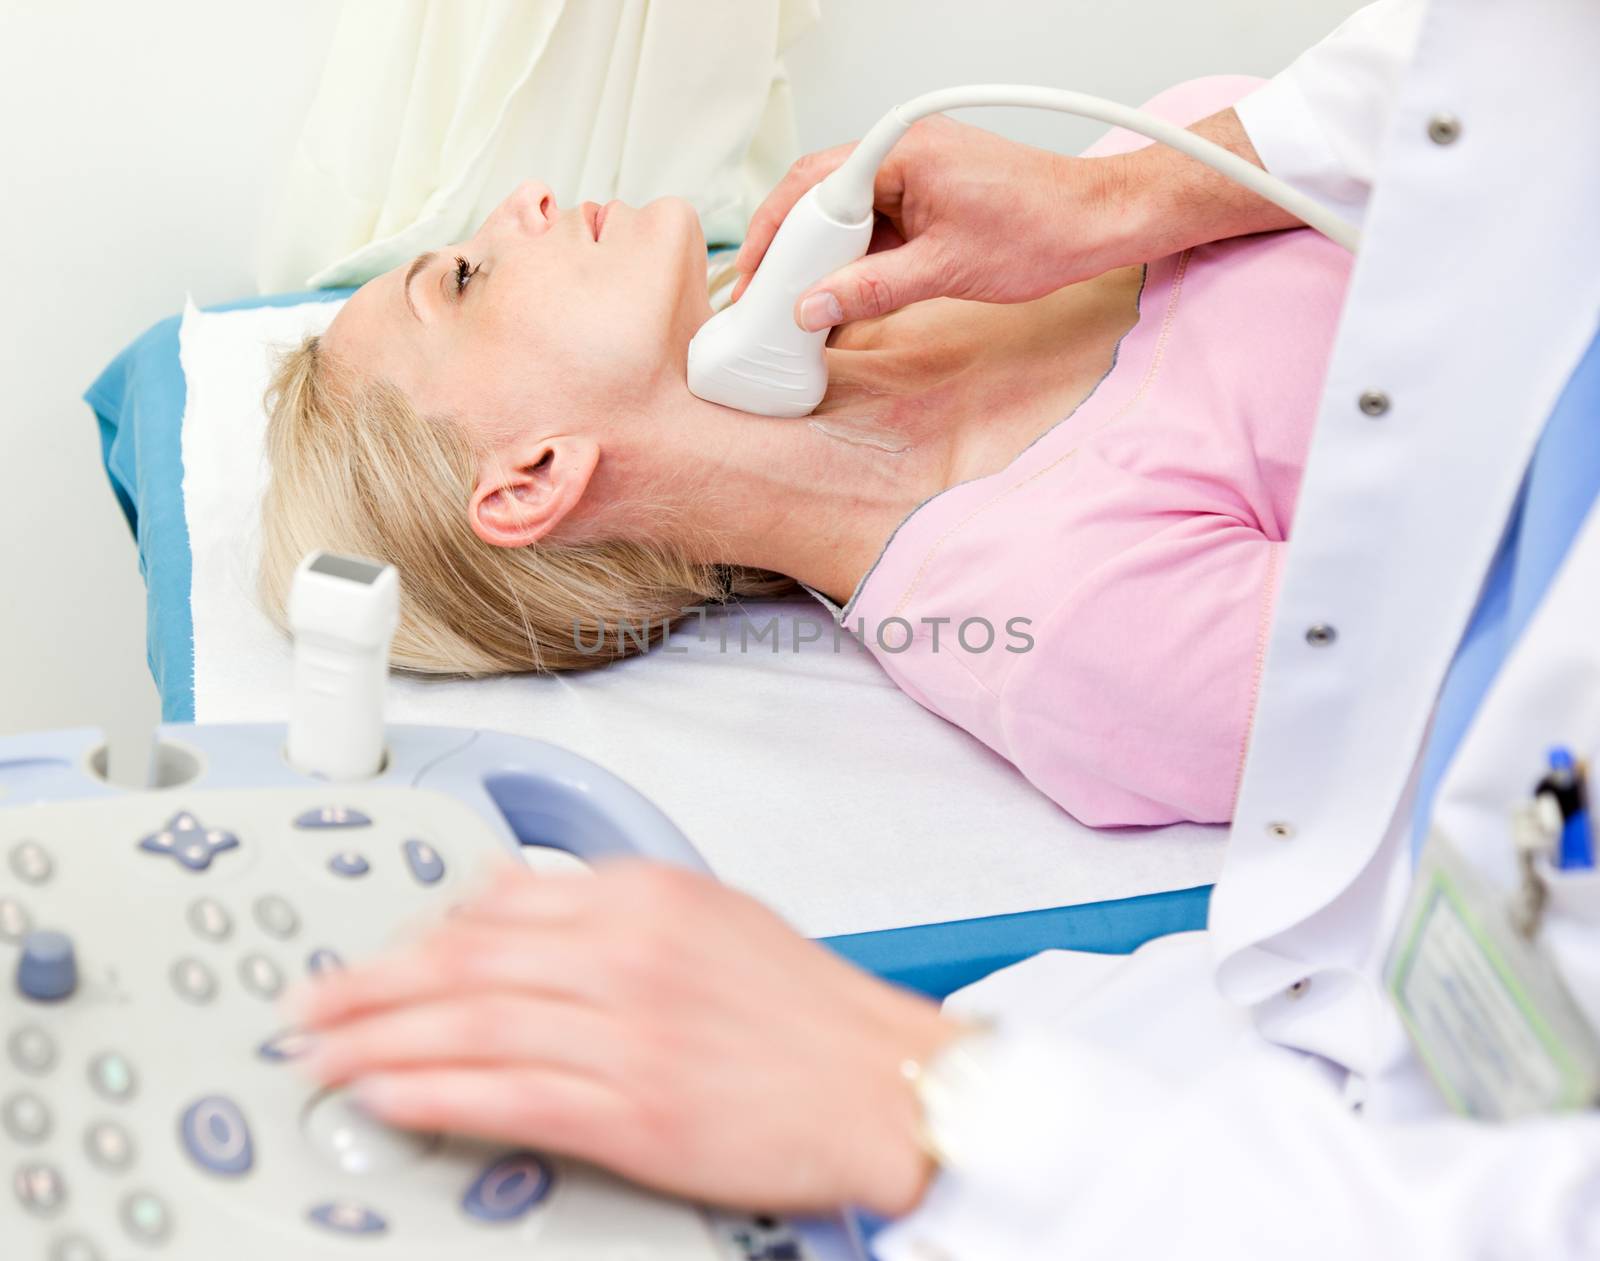 carotid Doppler ultrasound test by vilevi